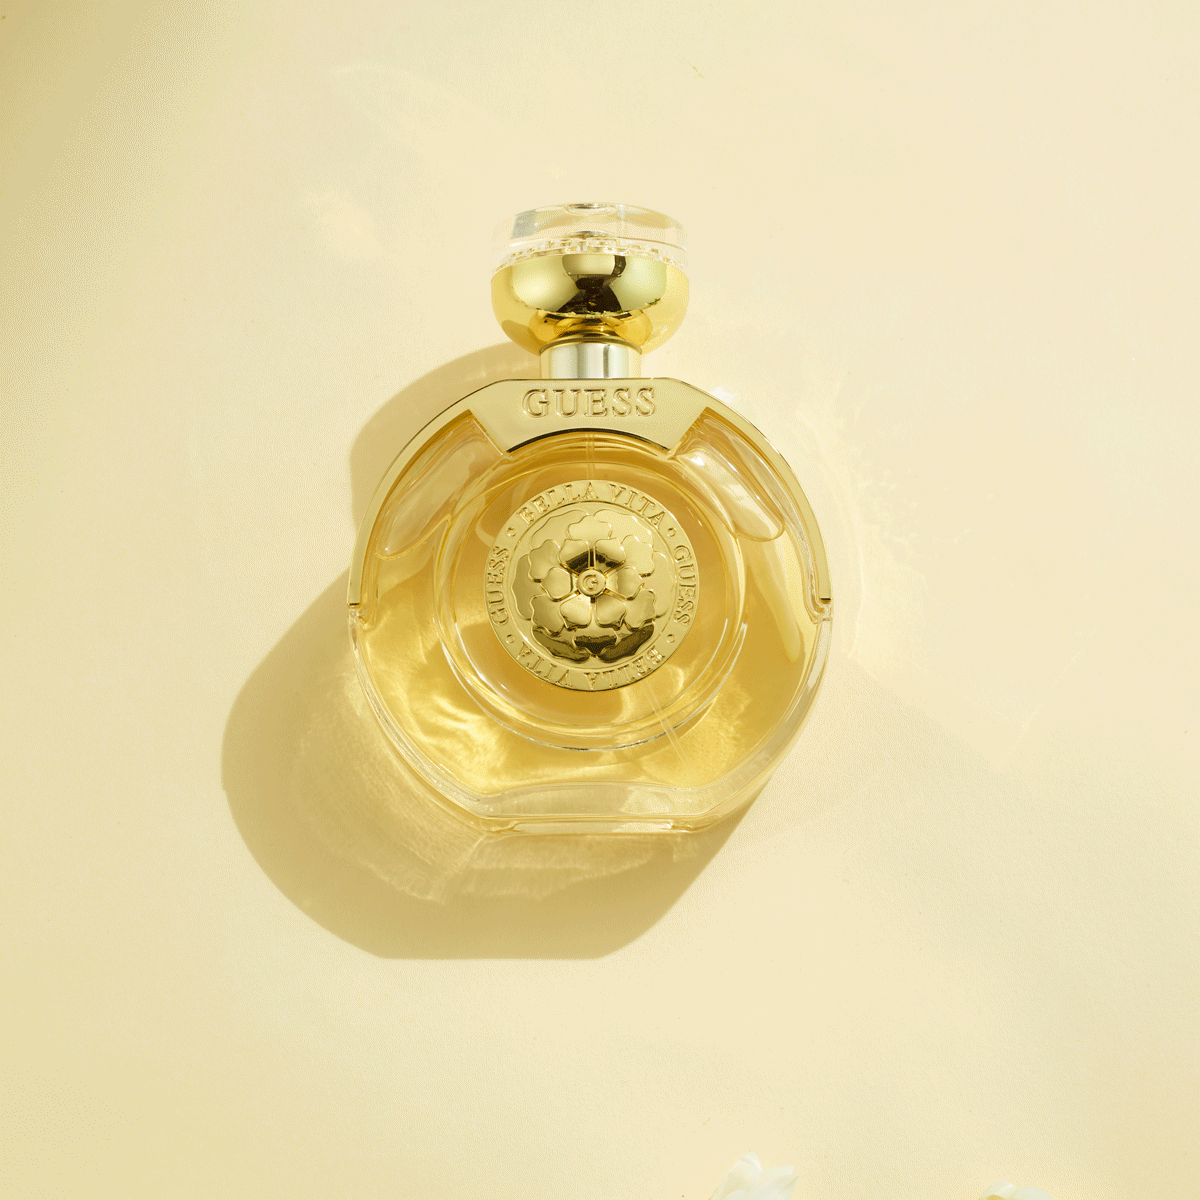 We review the new GUESS Bella Vita Eau de Parfum 1